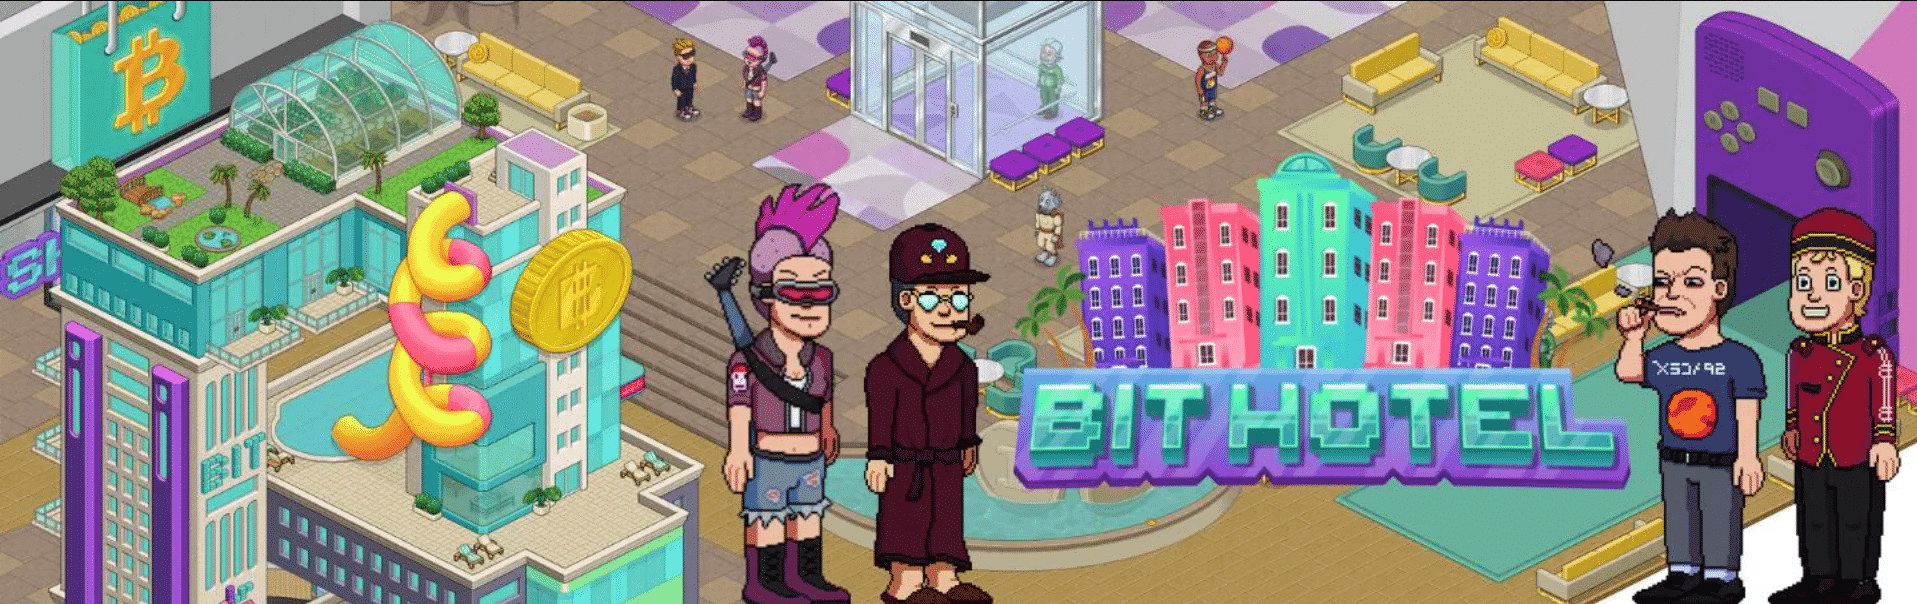 Bit Hotel é um jogo NFT online na Rede Ferrum com dinâmica social do tipo &quot;jogue para ganhar&quot;, onde os jogadores coletam itens NFT para ganhar recompensas.